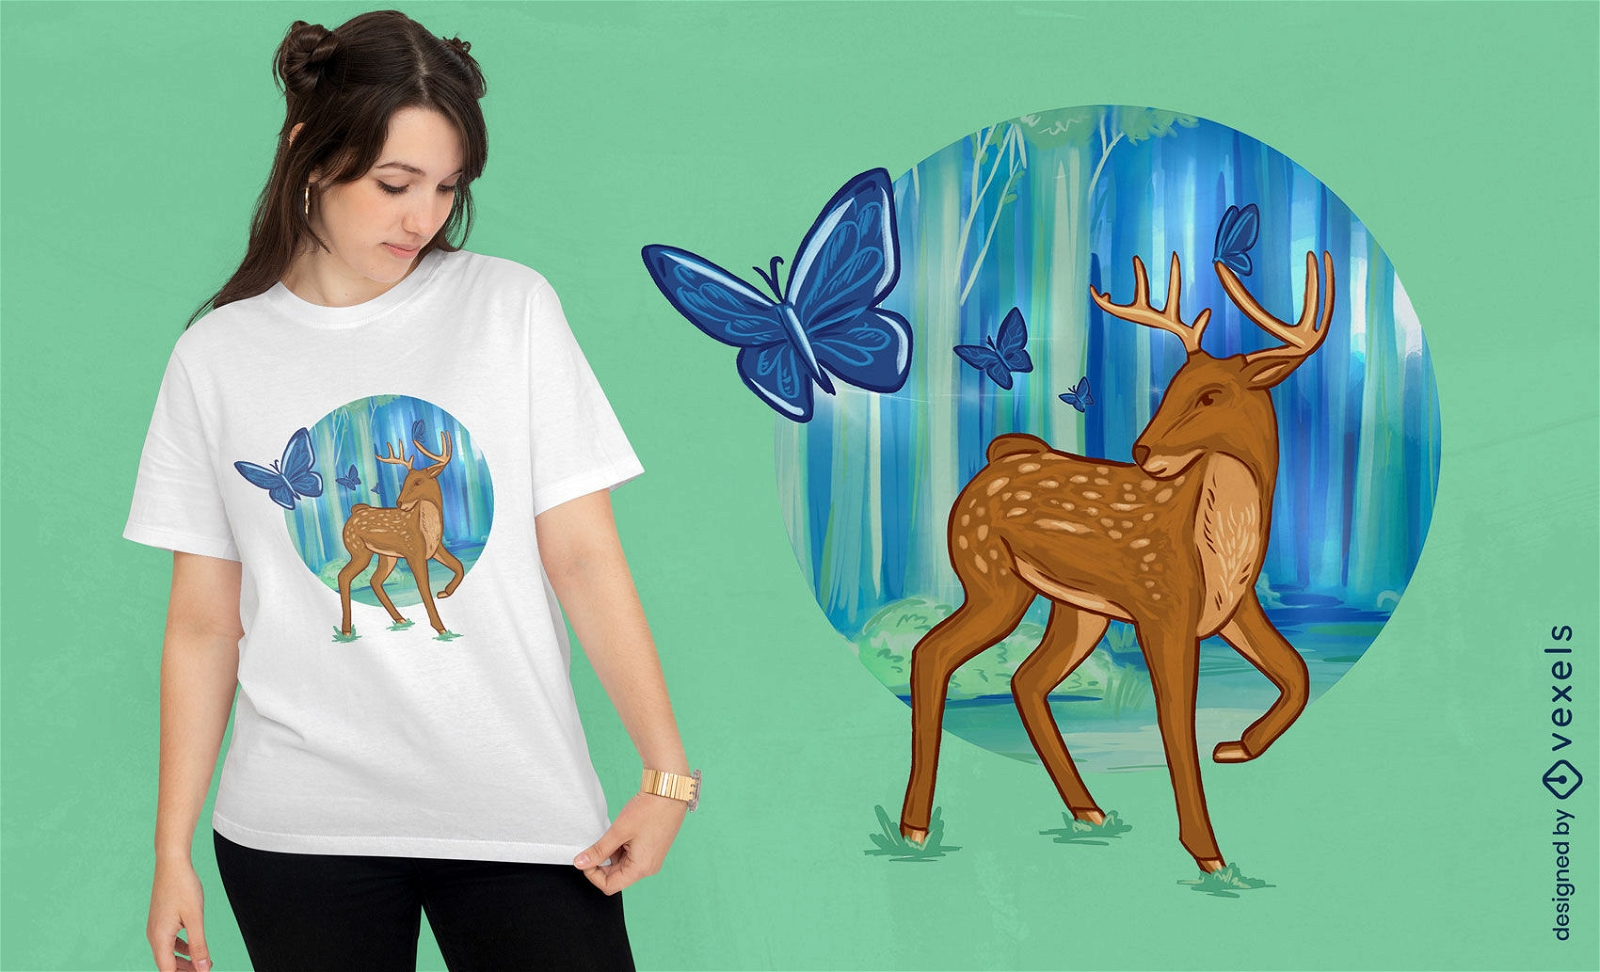 Deer and butterflies in forest t-shirt design